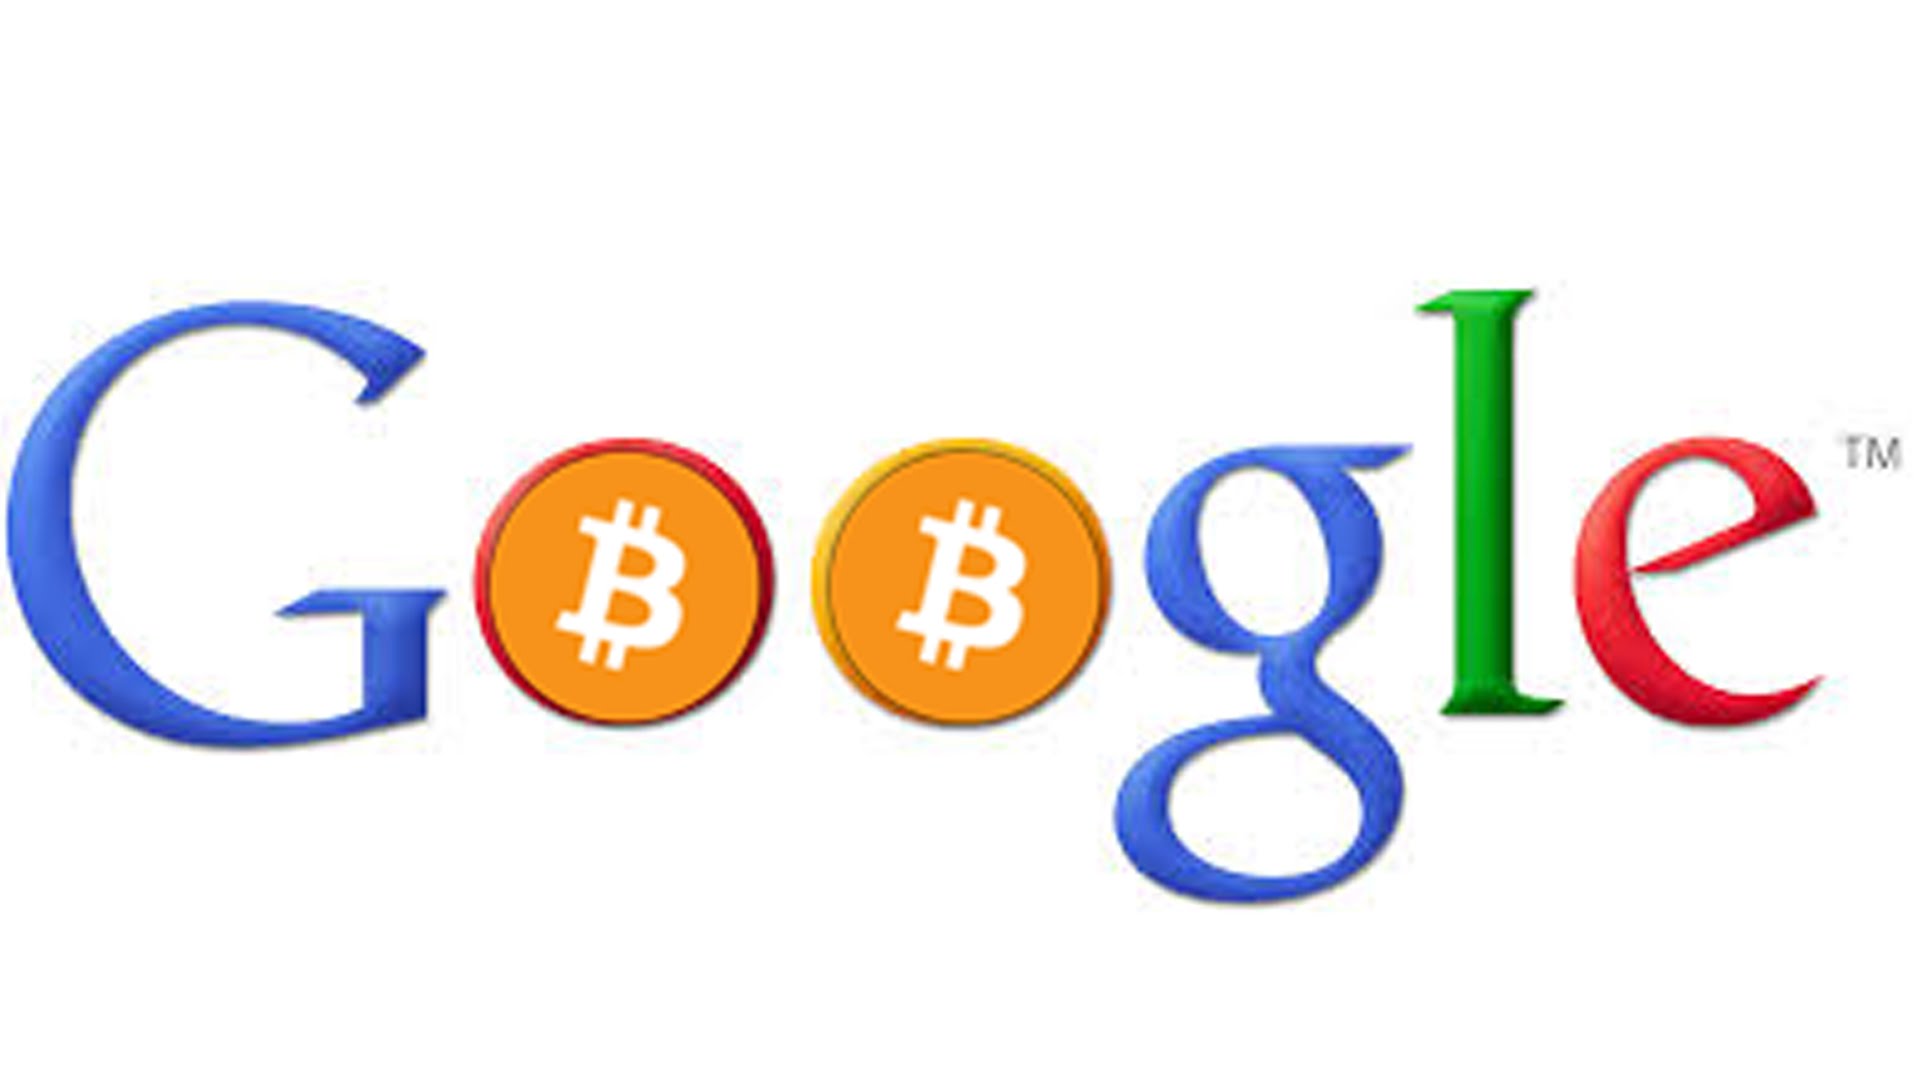 Google Starts Displaying Bitcoin Conversions